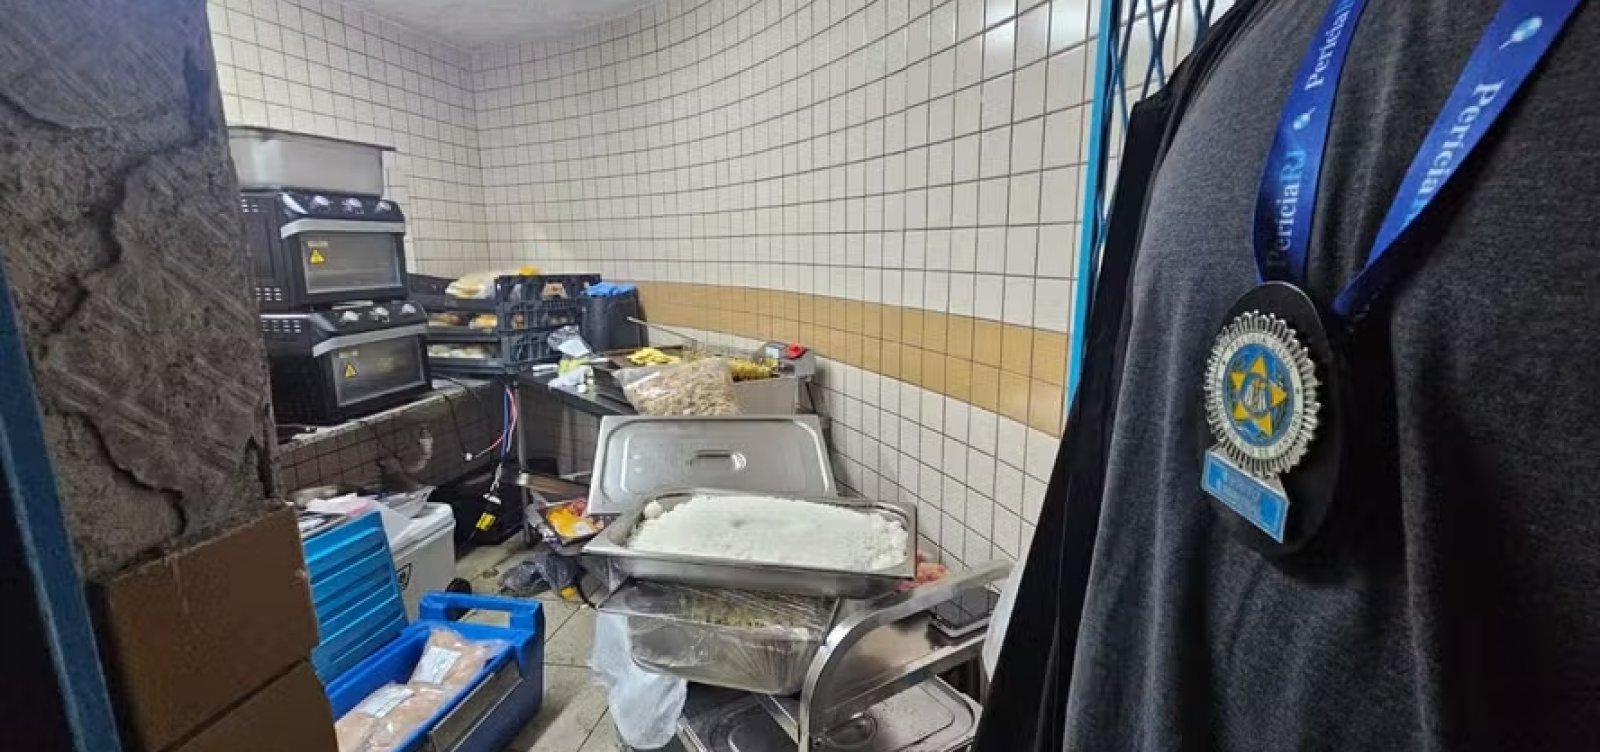 Camarote na Sapucaí  guarda alimentos em banheiro e responsável é presa